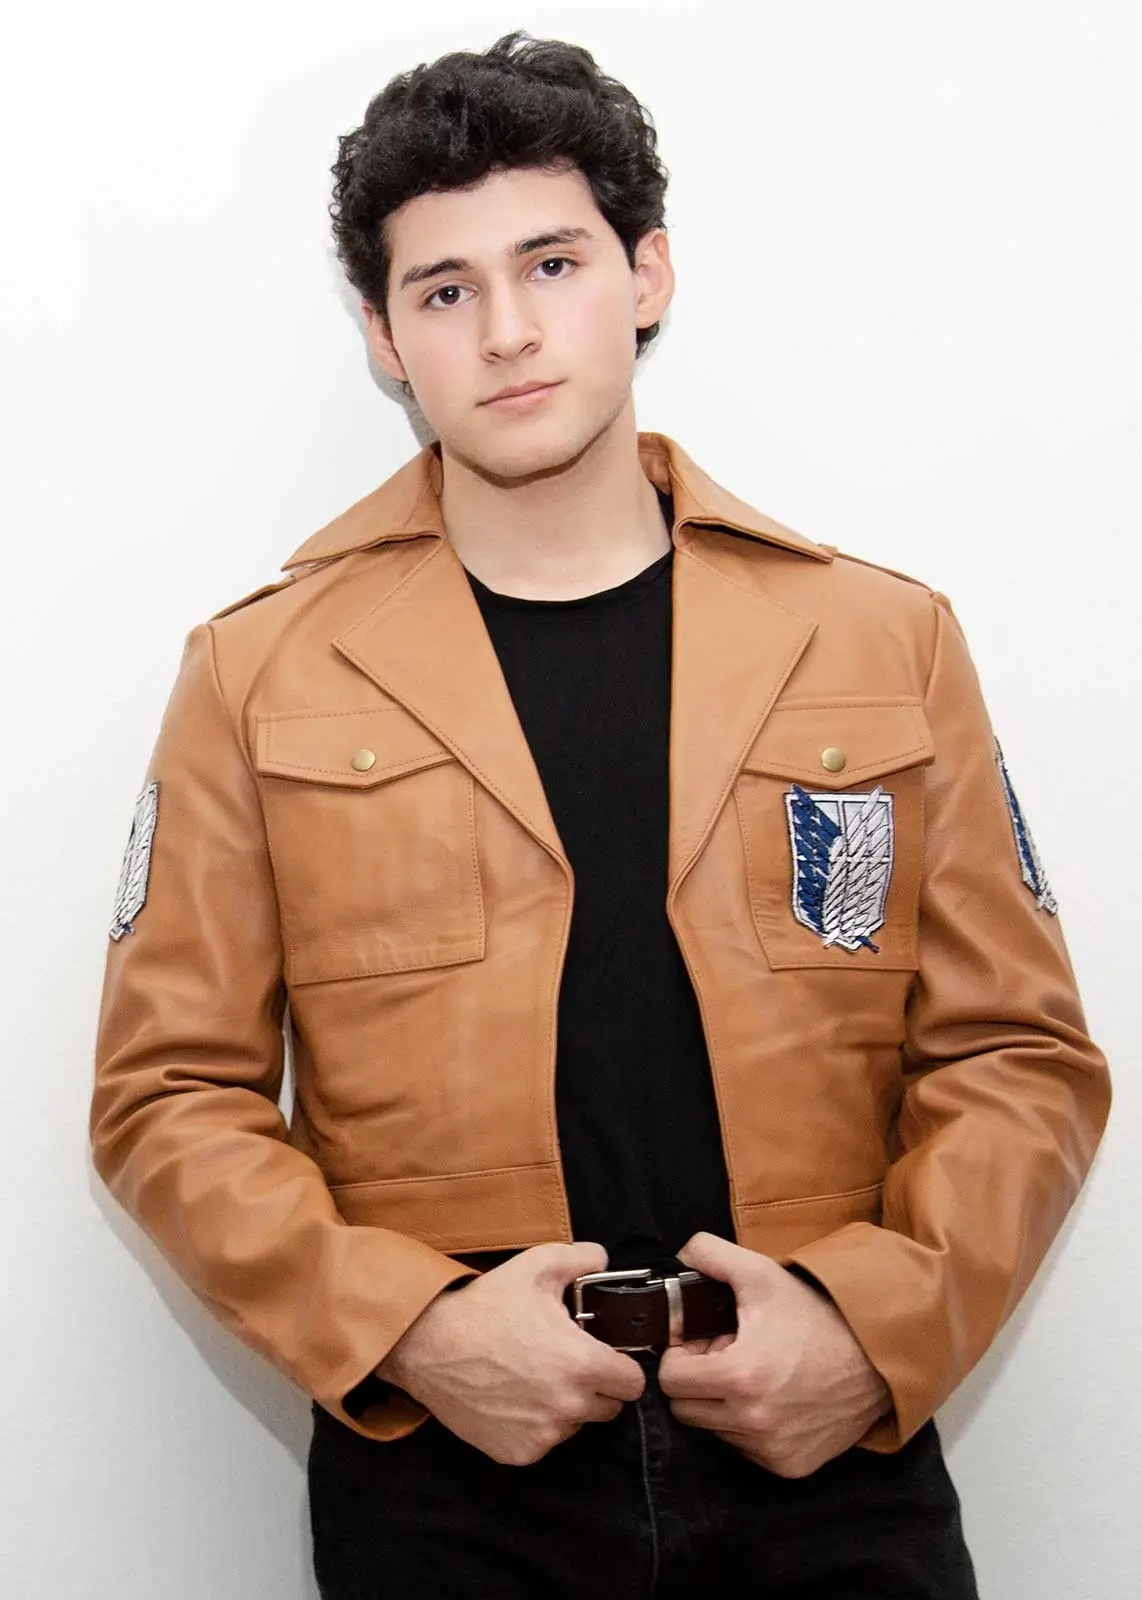 Leather Denim Jacket - Rugged & Iconic